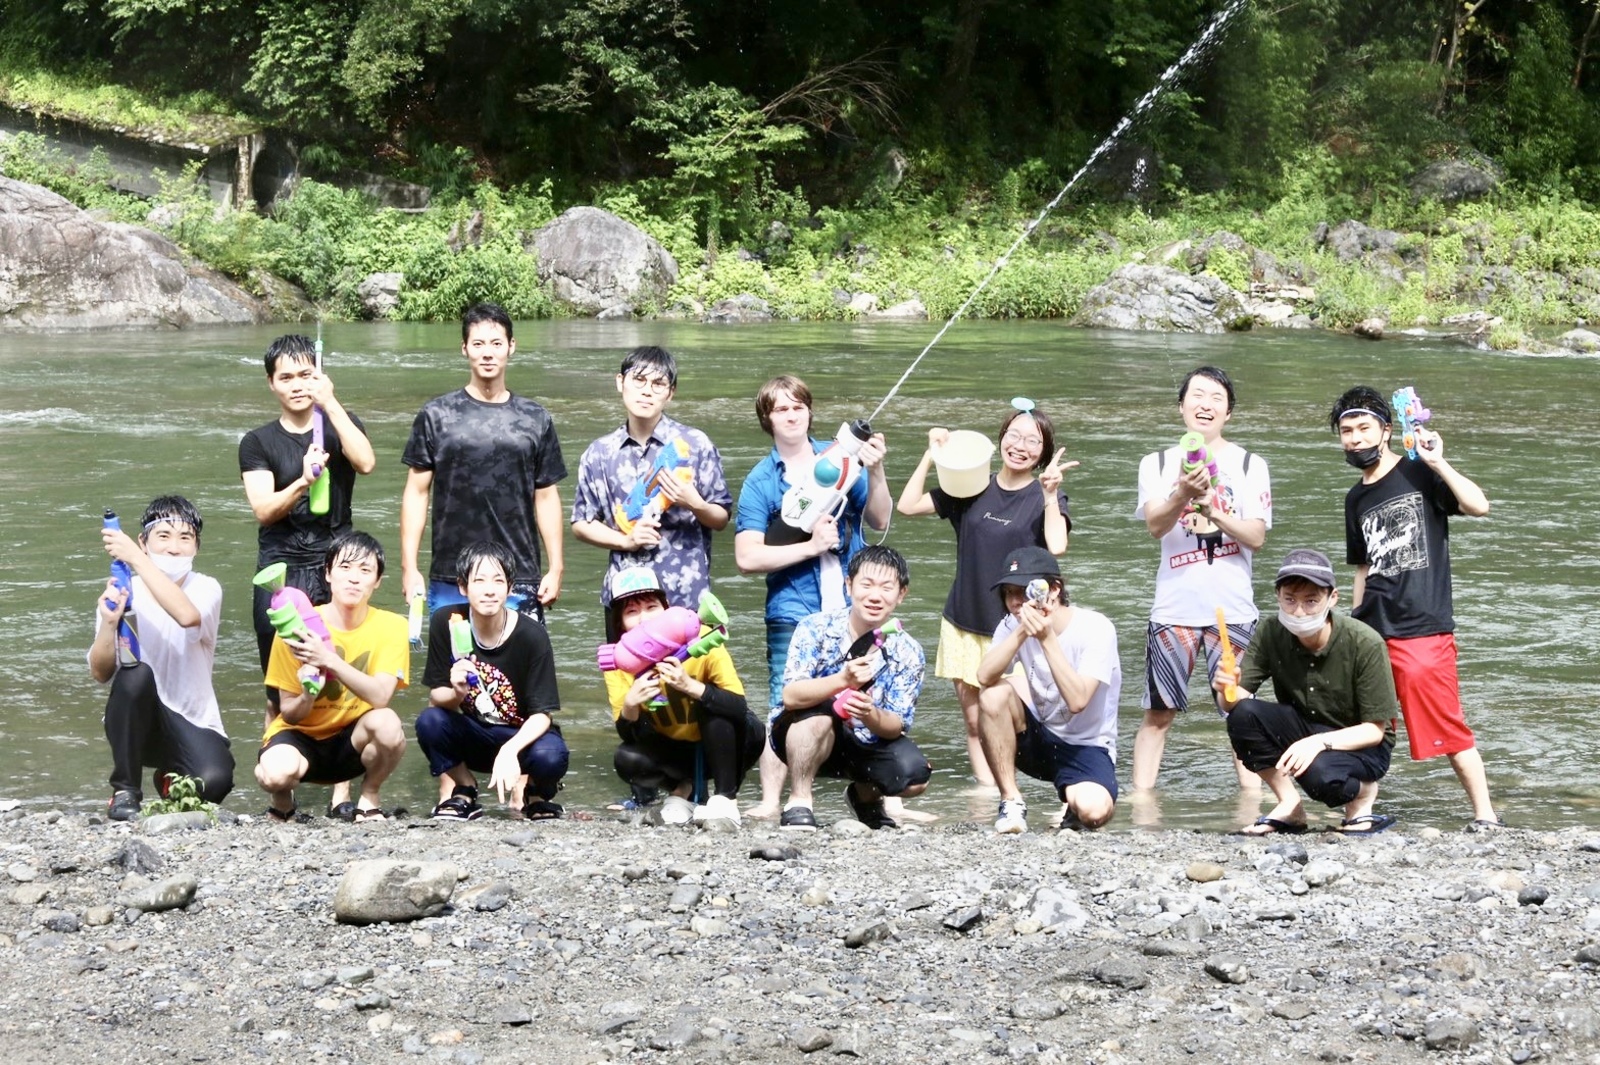 夏の特大企画🏖 多摩川上流でみんなで川遊びをしよう！ 〜スーパーイカした武器で的を狙え！🏄‍♂️〜